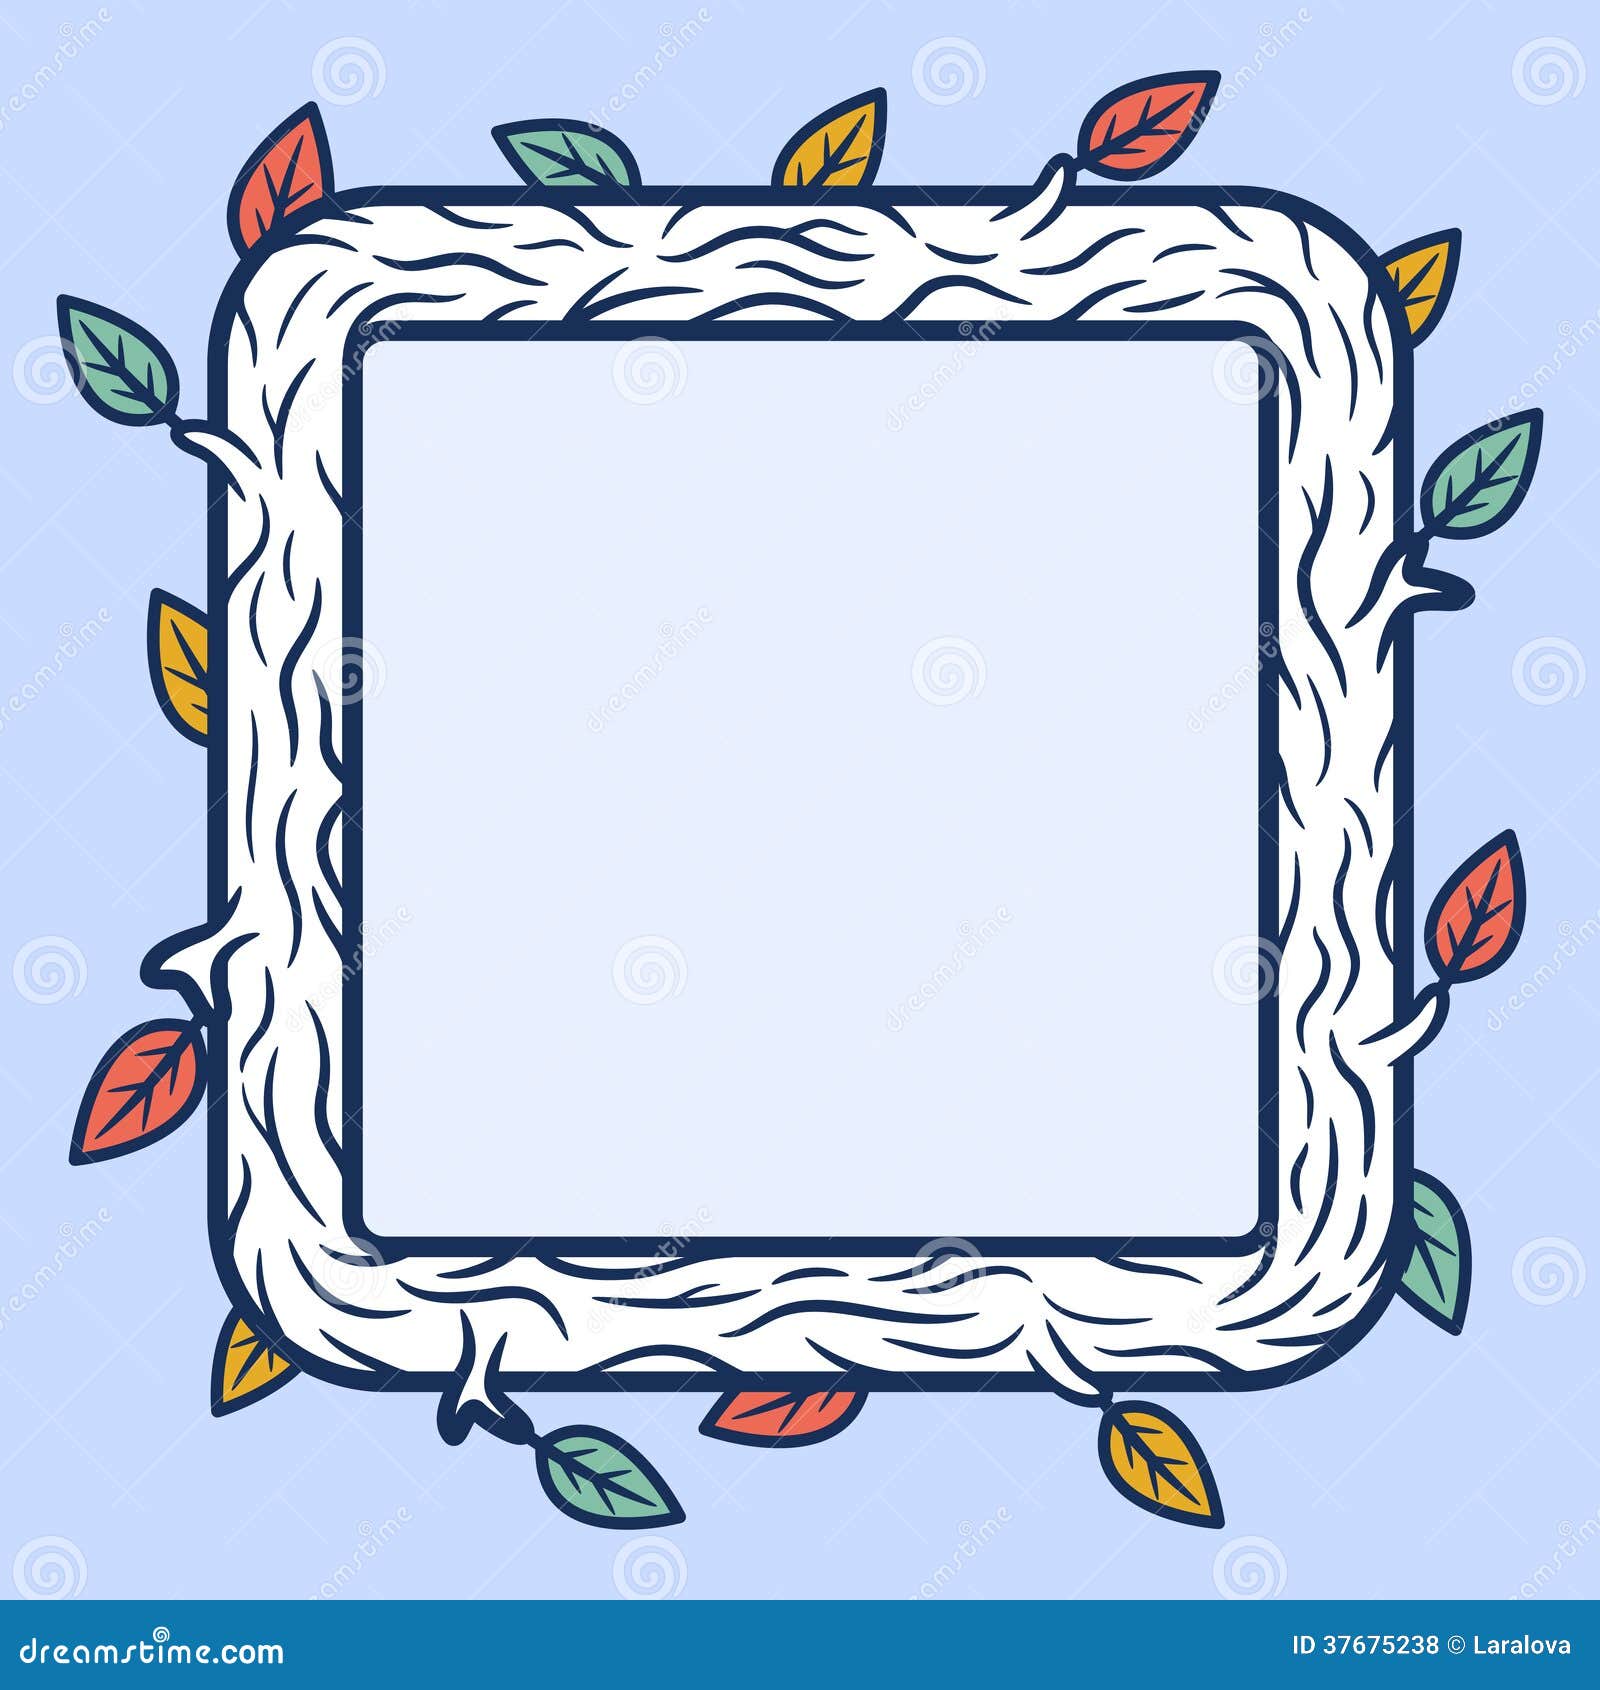 Square wooden frame stock vector. Illustration of leaf - 37675238